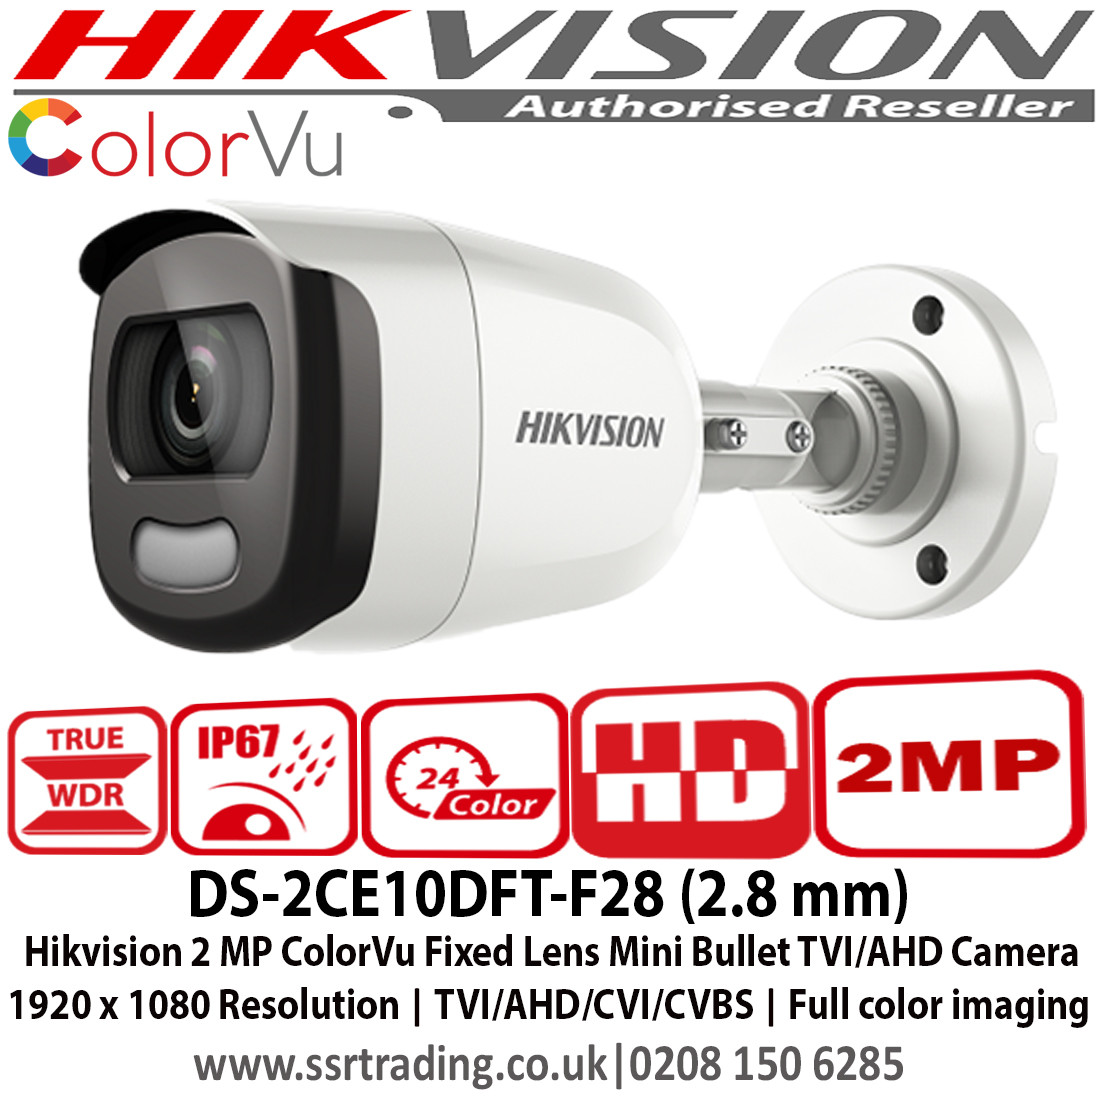 hikvision pc client download